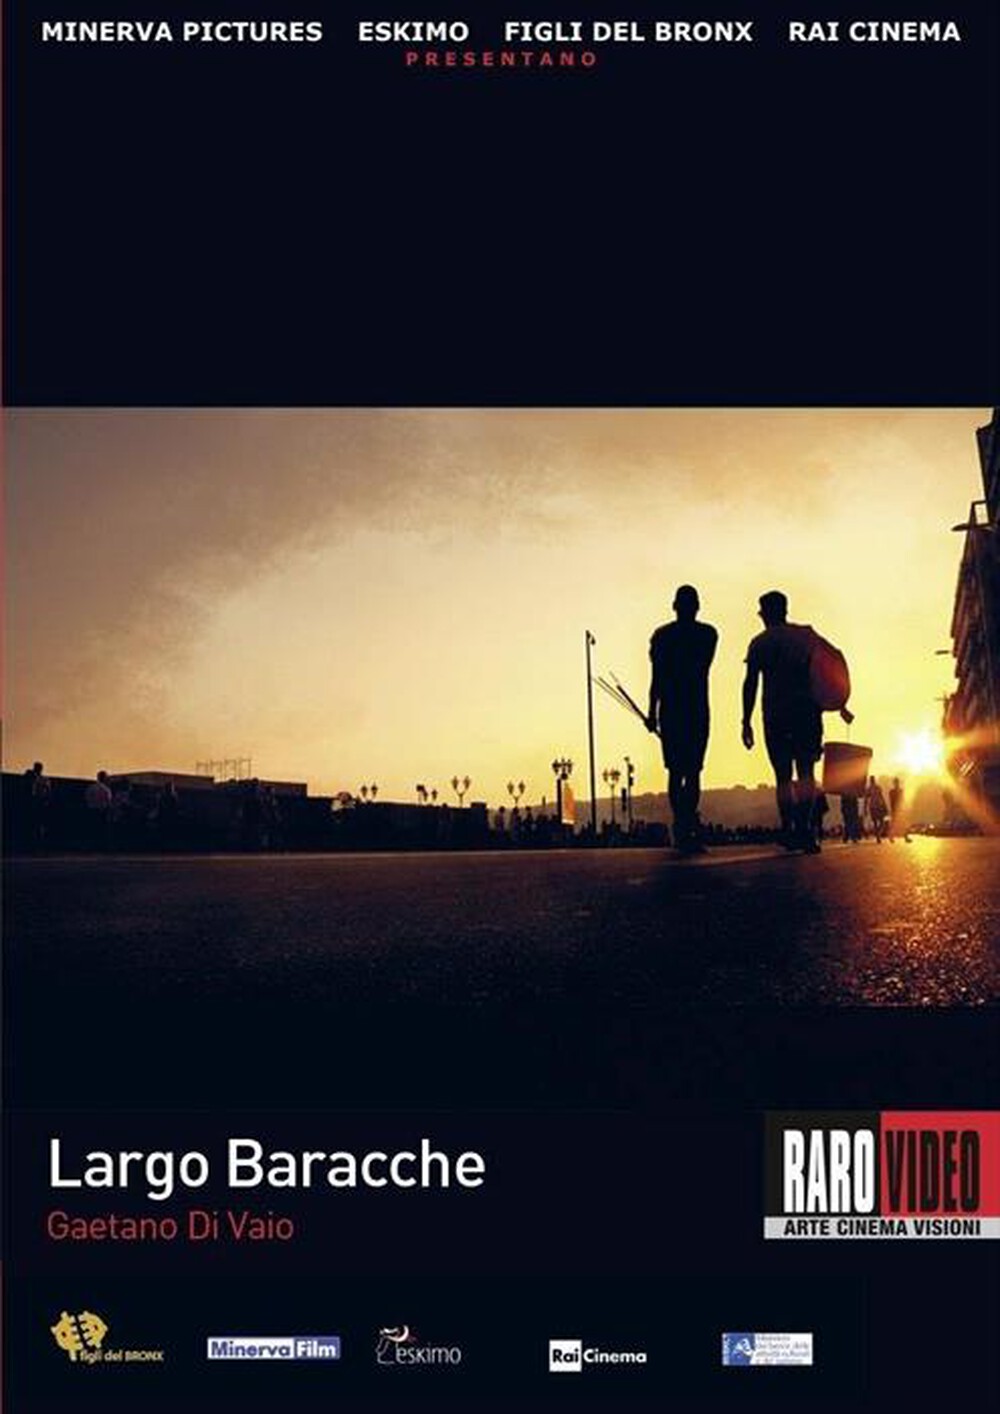 "CECCHI GORI - Largo Baracche"